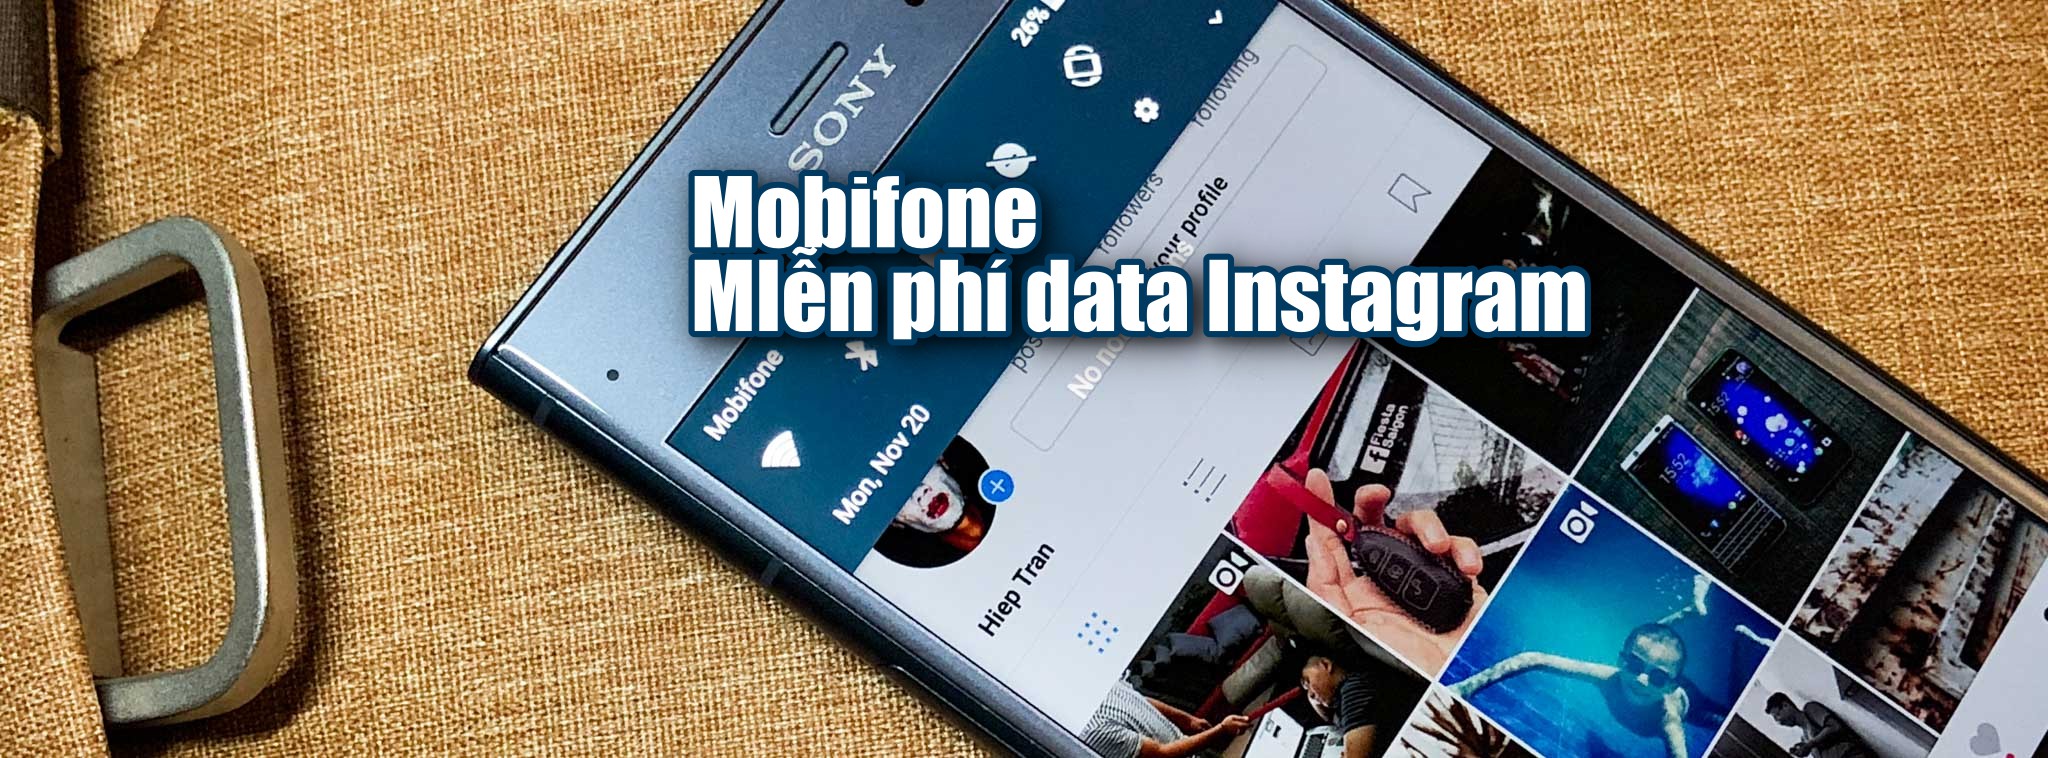 Mobifone đang cho sử dụng Instagram miễn phí